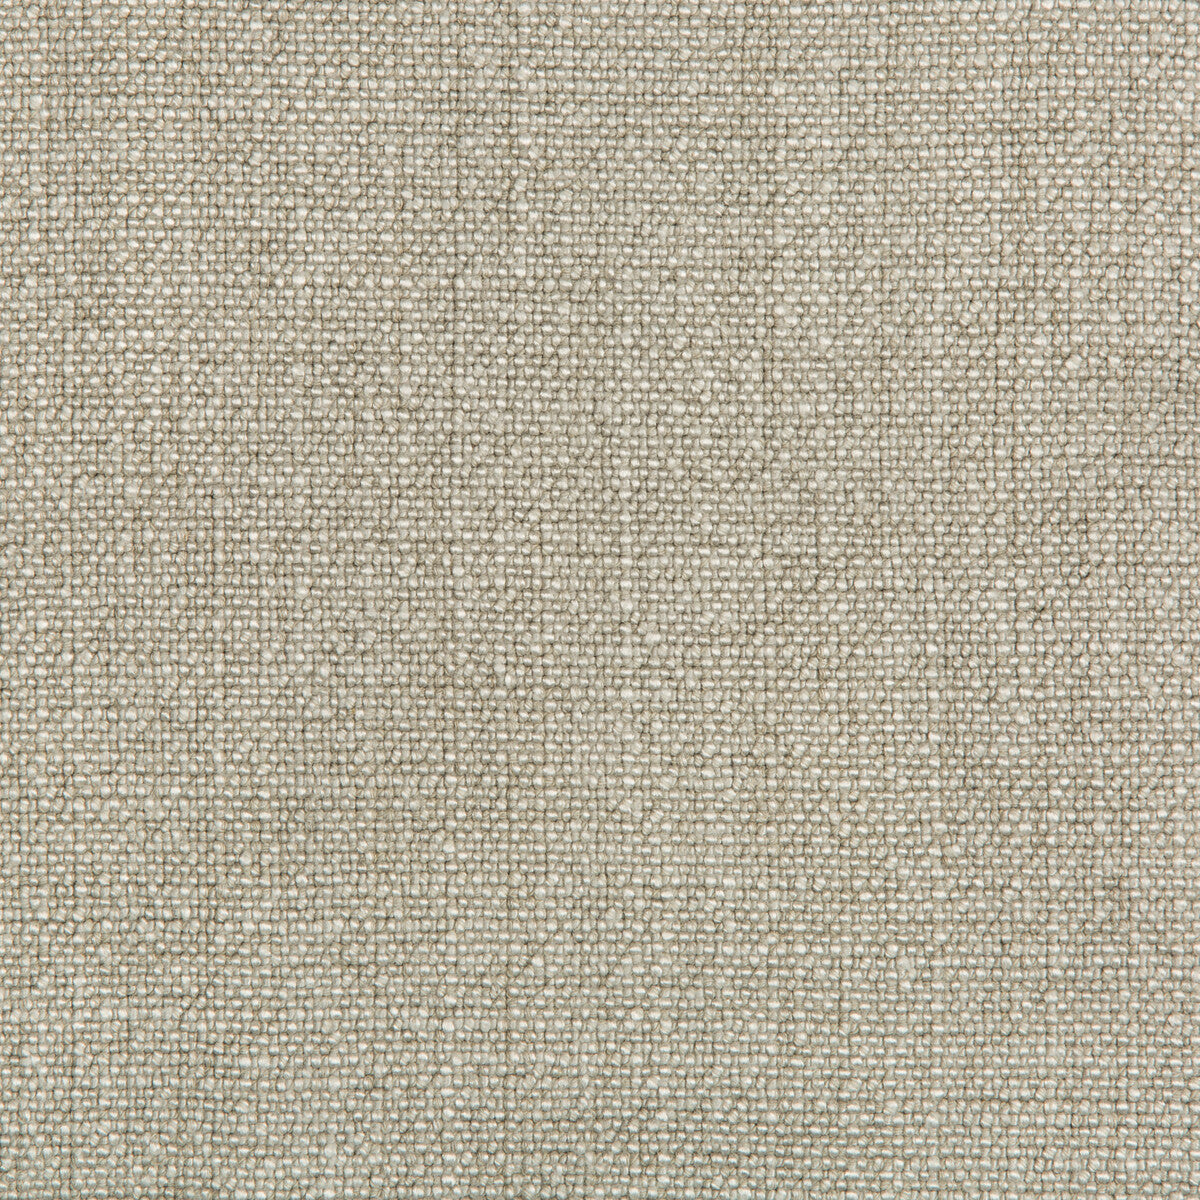 Kravet Basics fabric in 35189-1111 color - pattern 35189.1111.0 - by Kravet Basics